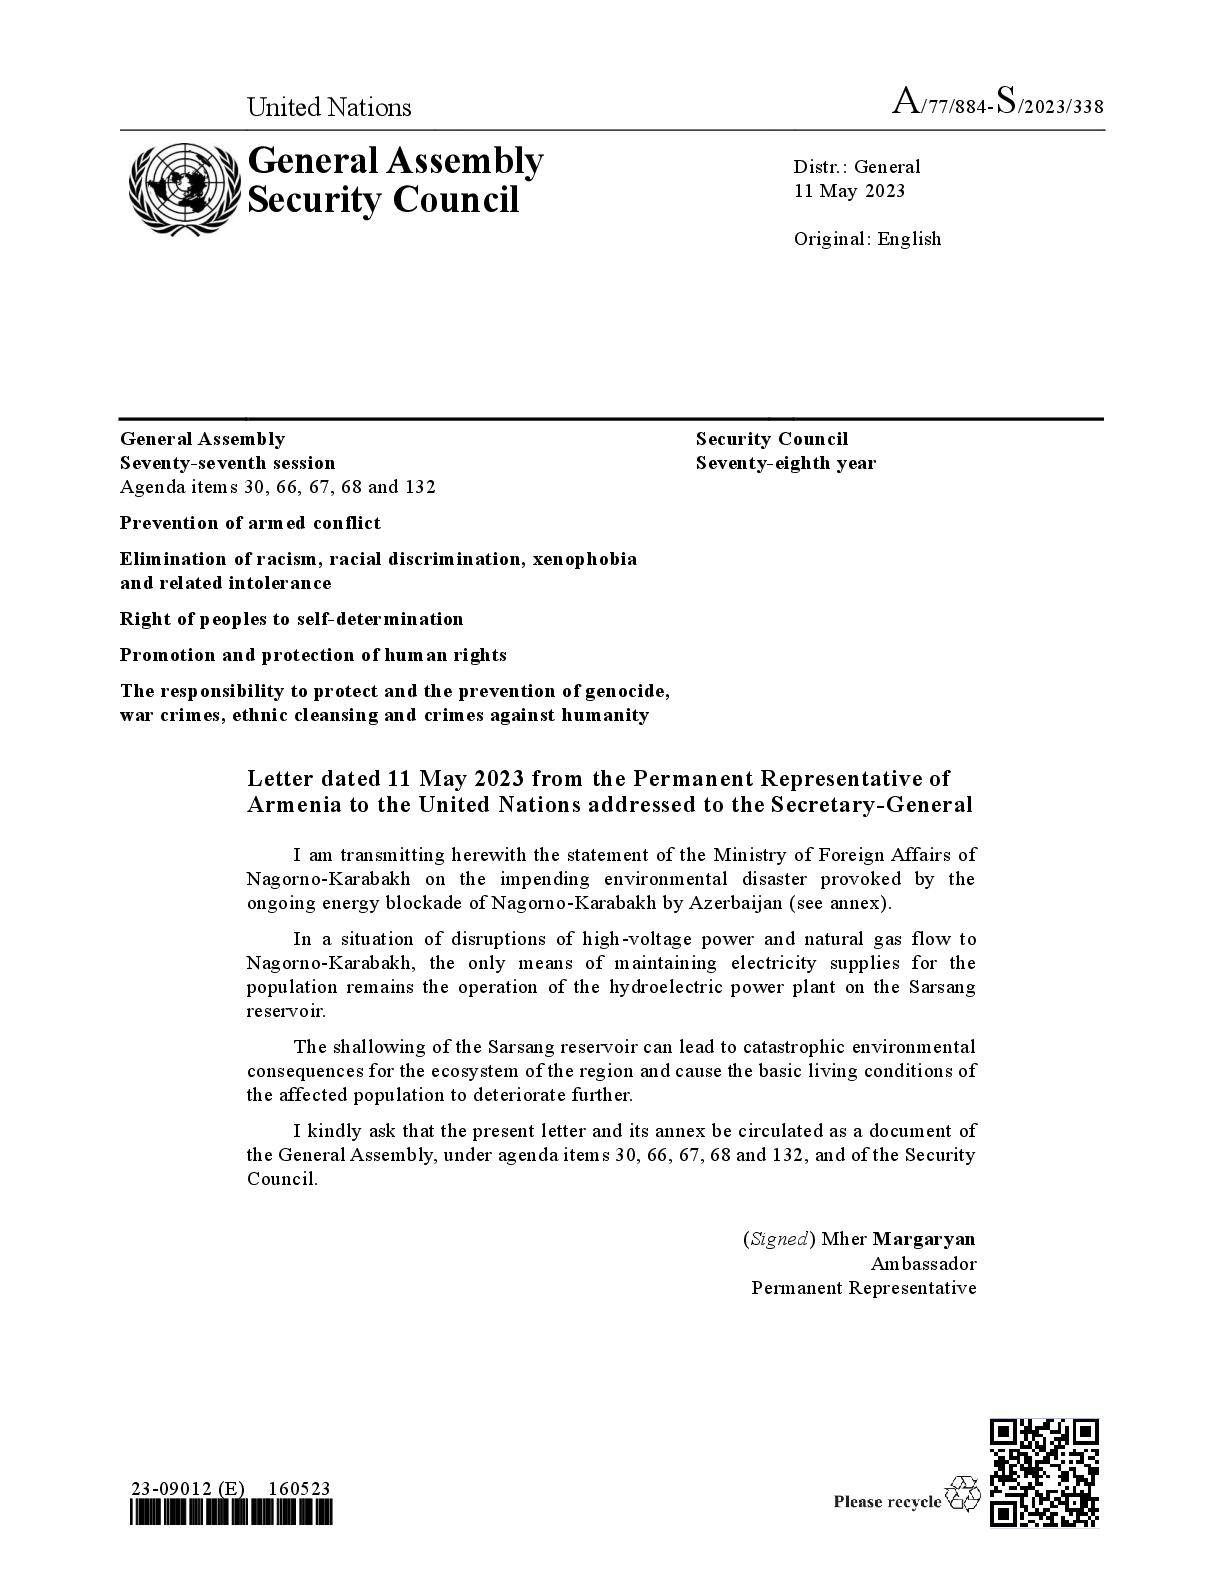 ՄԱԿ-ում ՀՀ մշտական ներկայացուցչի նամակը` Ադրբեջանի կողմից Լեռնային Ղարաբաղի շարունակվող էներգետիկ շրջափակման հետևանքով առաջացած մոտալուտ բնապահպանական աղետի մասին